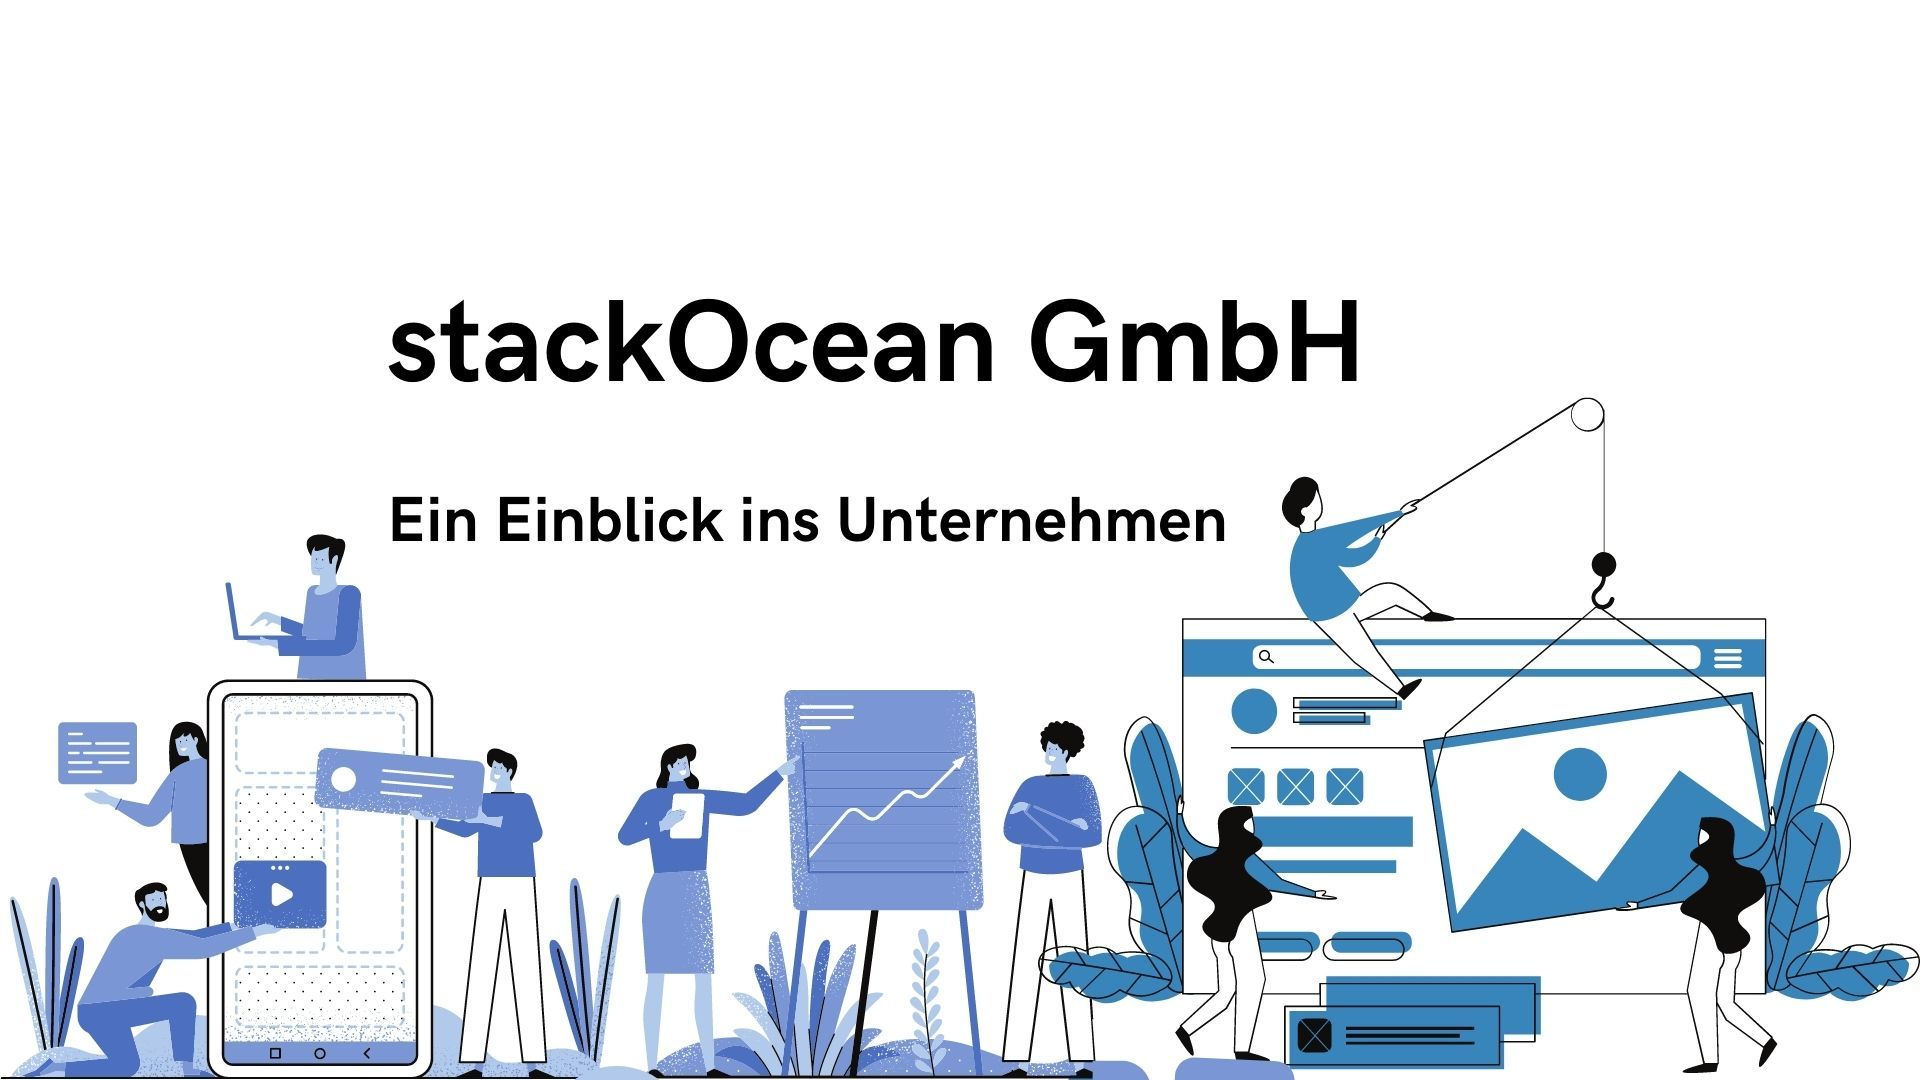 stackOcean GmbH - ein Einblick ins Unternehmen